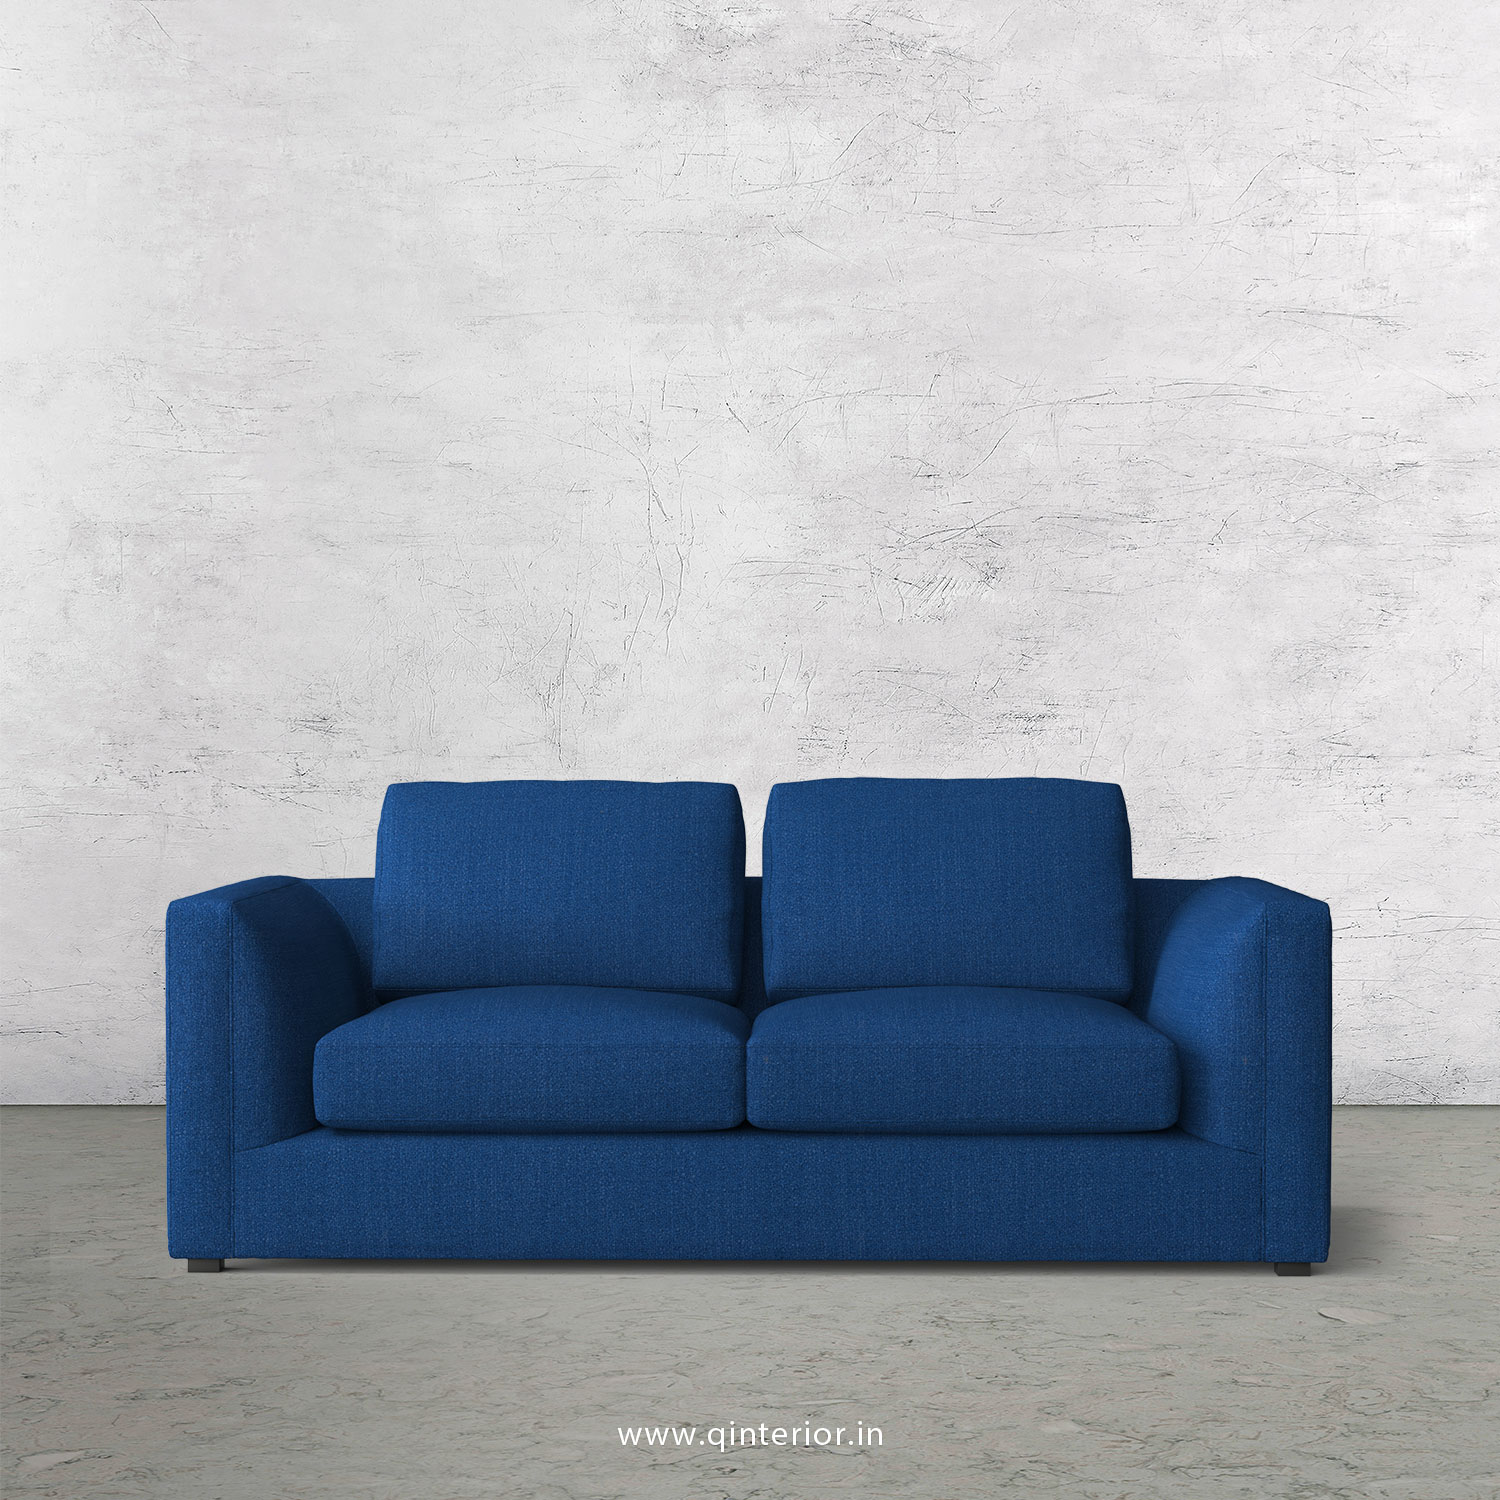 IRVINE 2 Seater Sofa in Bargello Fabric - SFA003 BG07